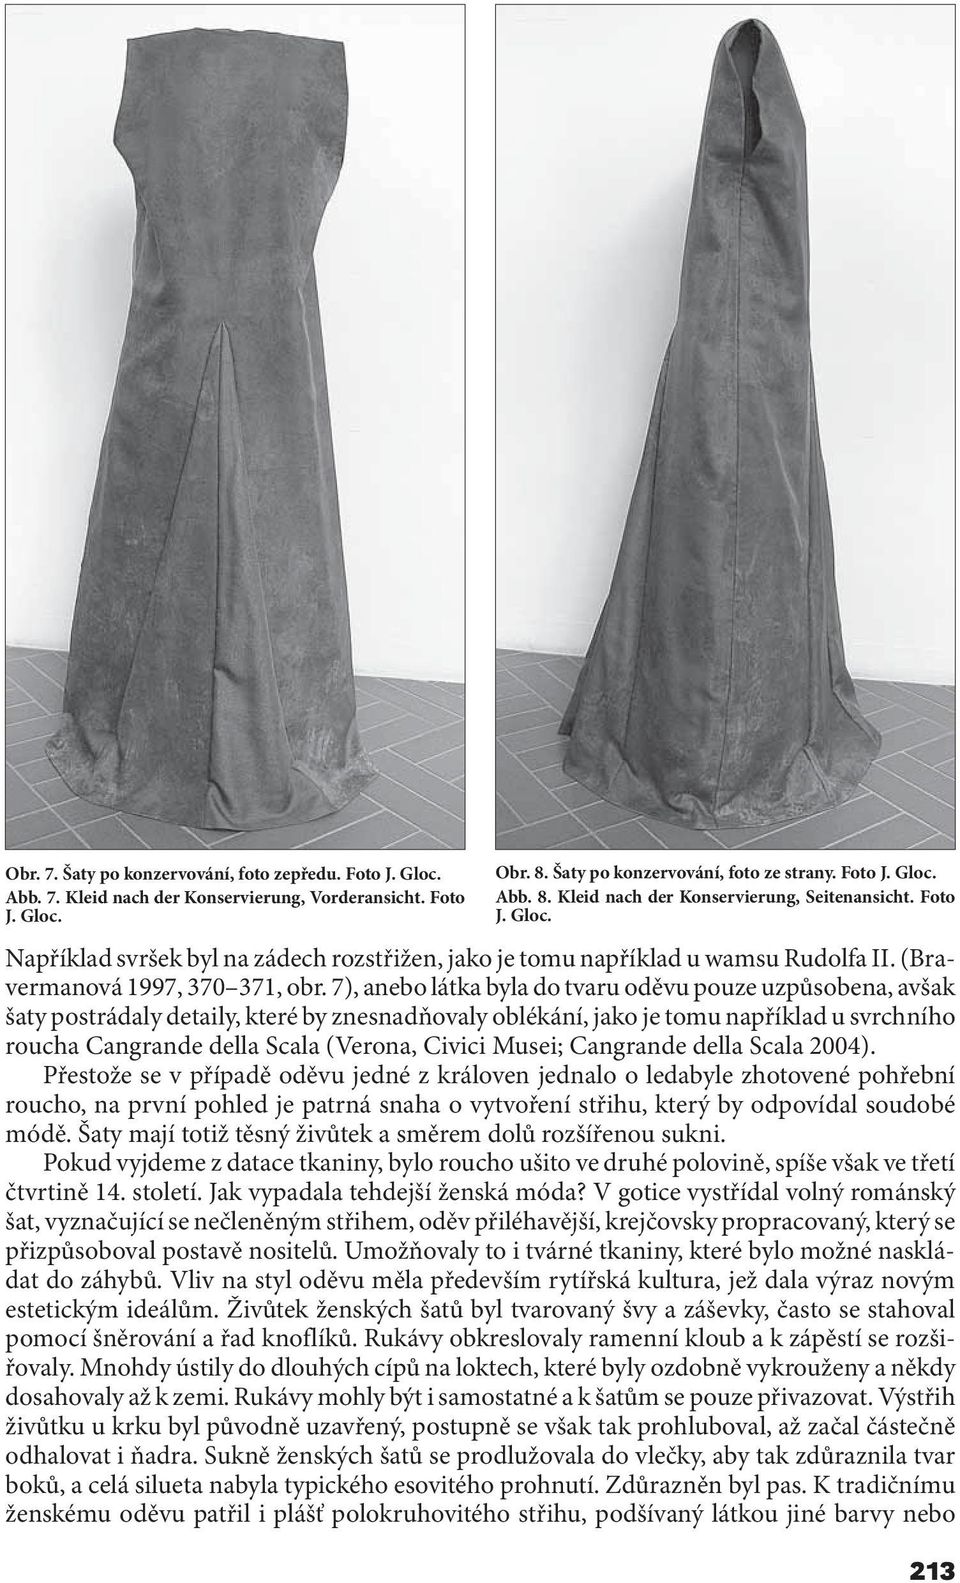 7), anebo látka byla do tvaru oděvu pouze uzpůsobena, avšak šaty postrádaly detaily, které by znesnadňovaly oblékání, jako je tomu například u svrchního roucha Cangrande della Scala (Verona, Civici